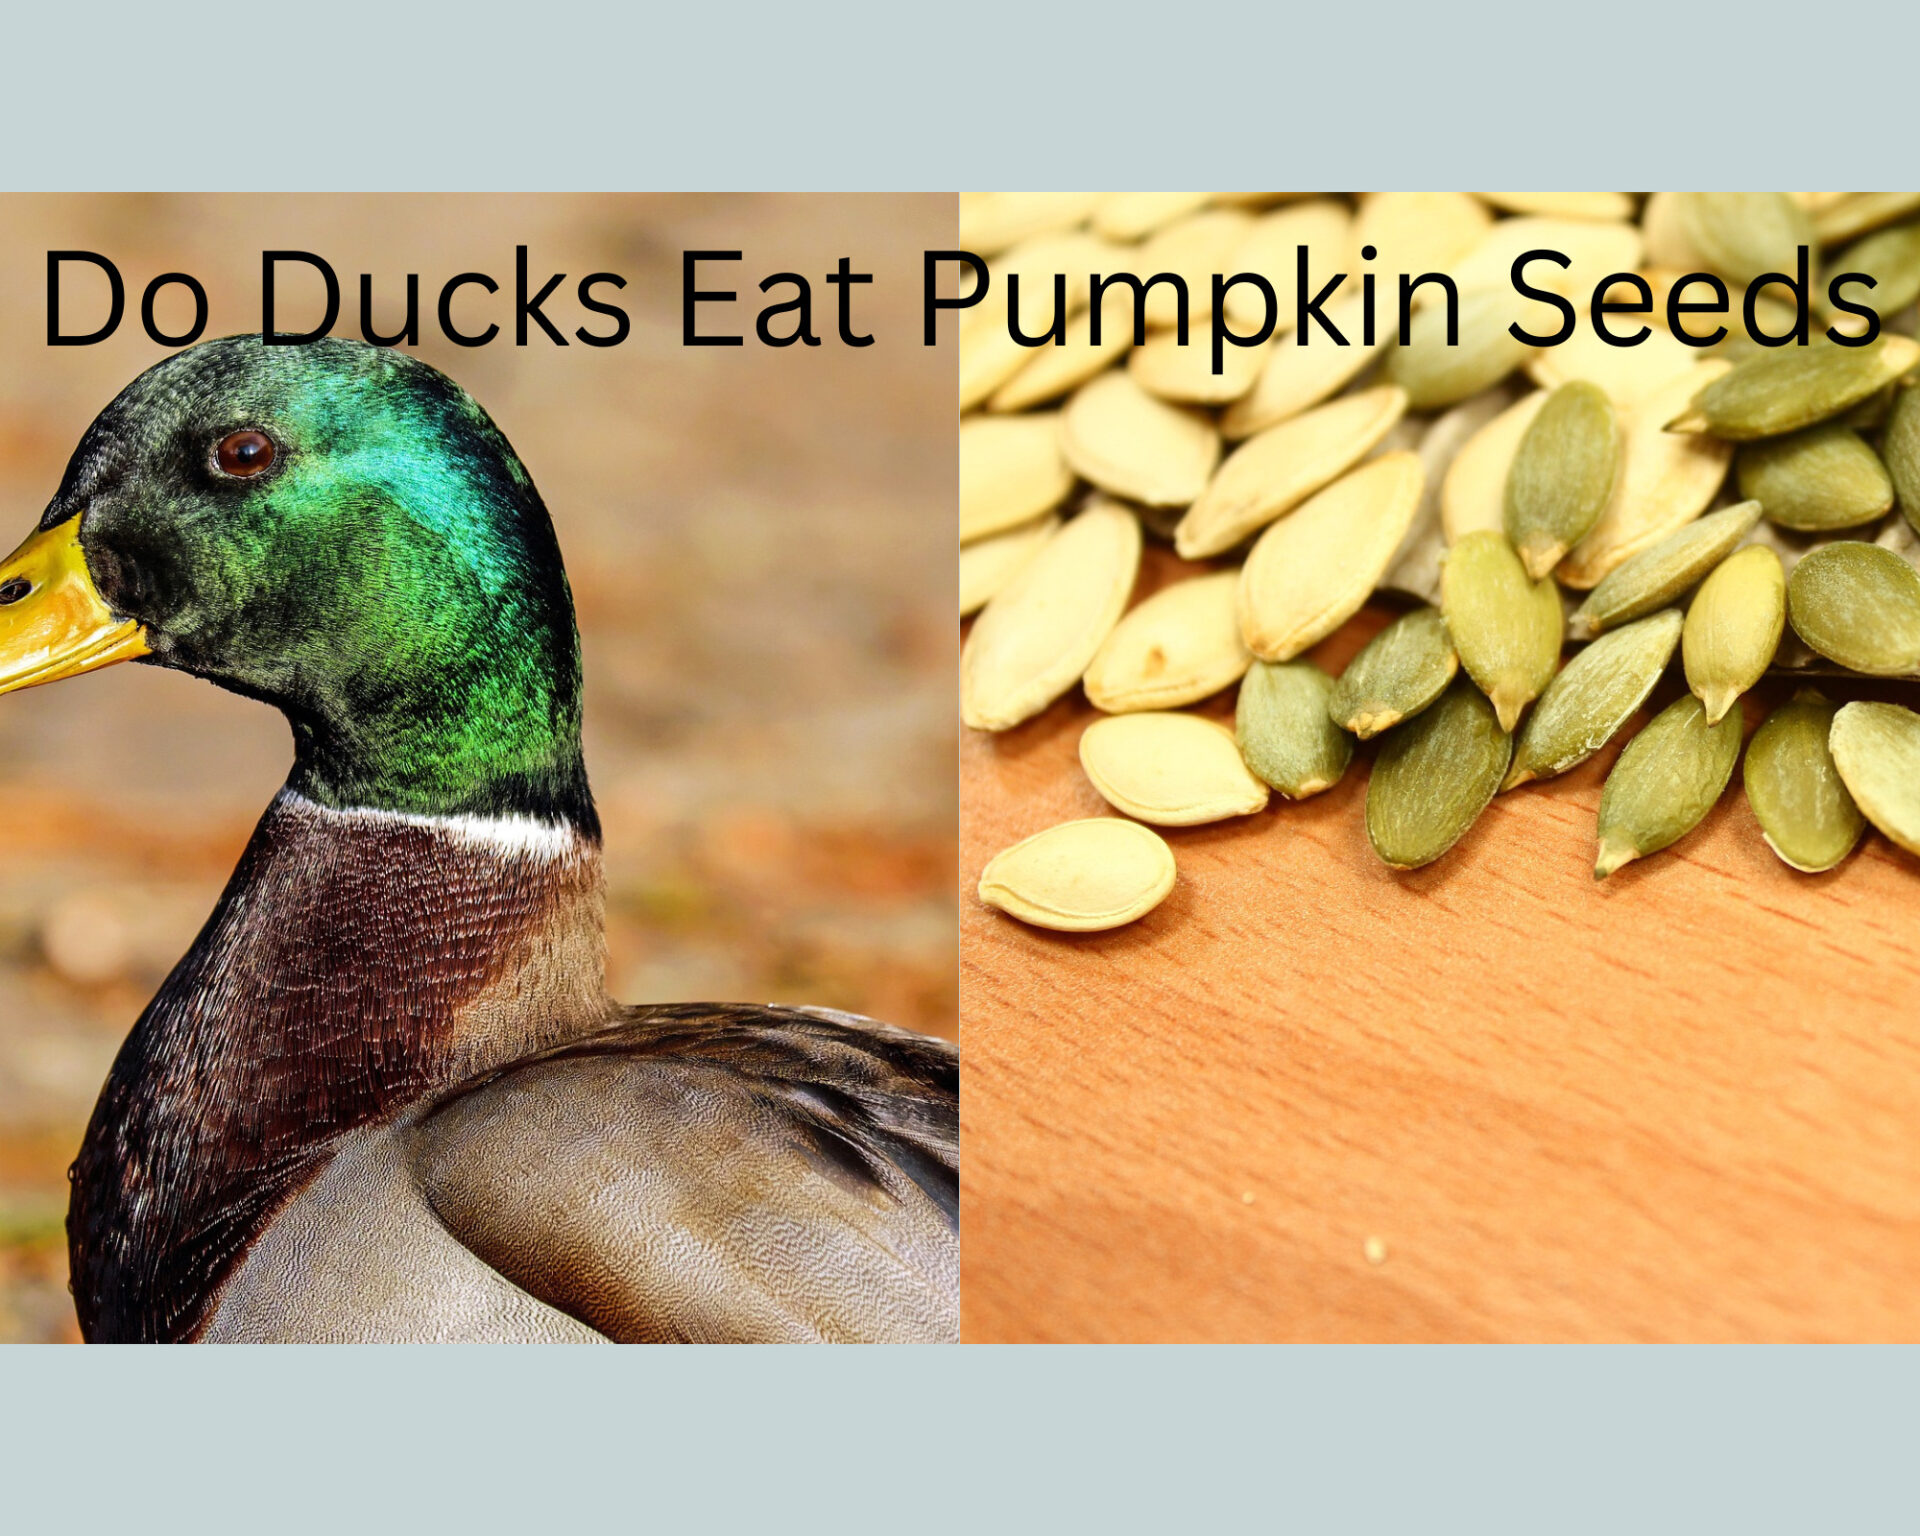 Can Ducks Eat Pumpkin seeds?